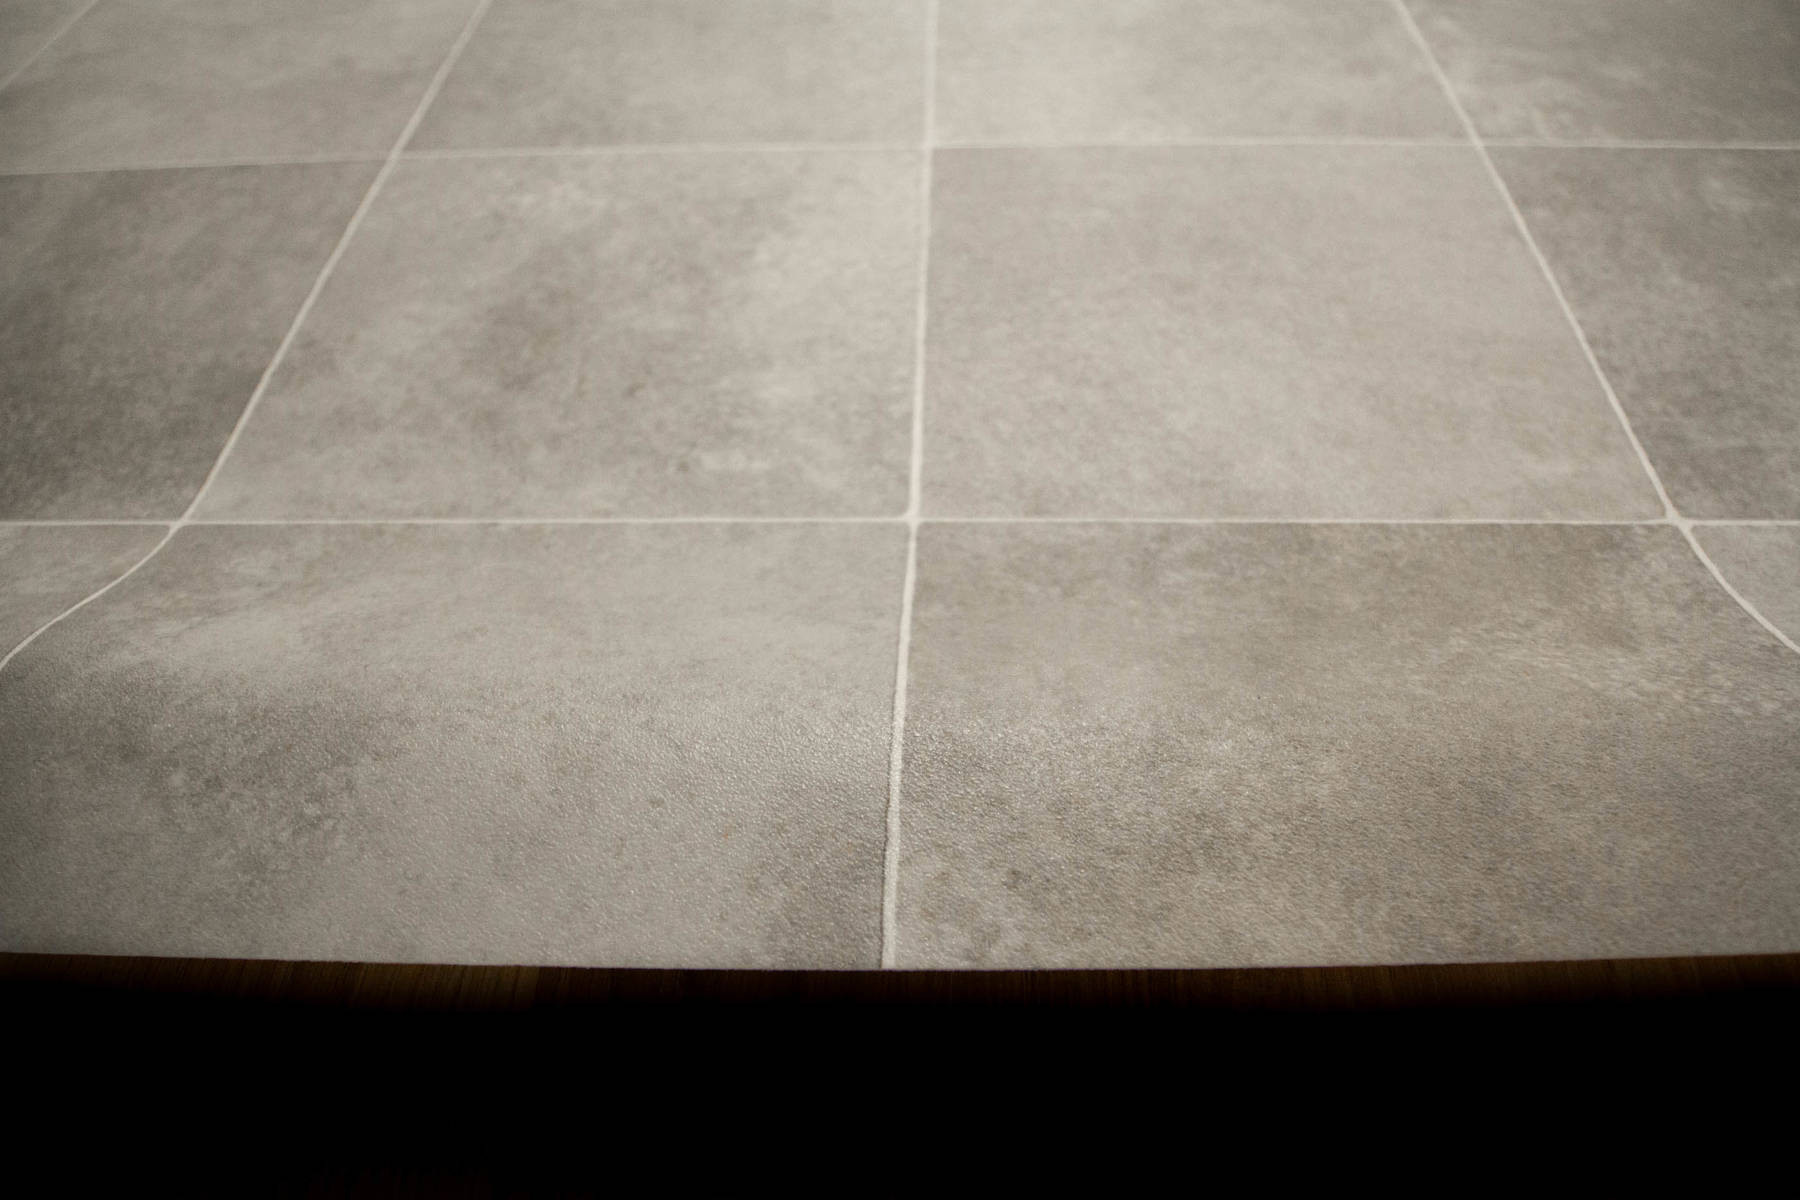 PVC podlaha Atlantic Zala 997M čtvercové dlaždice, šedá